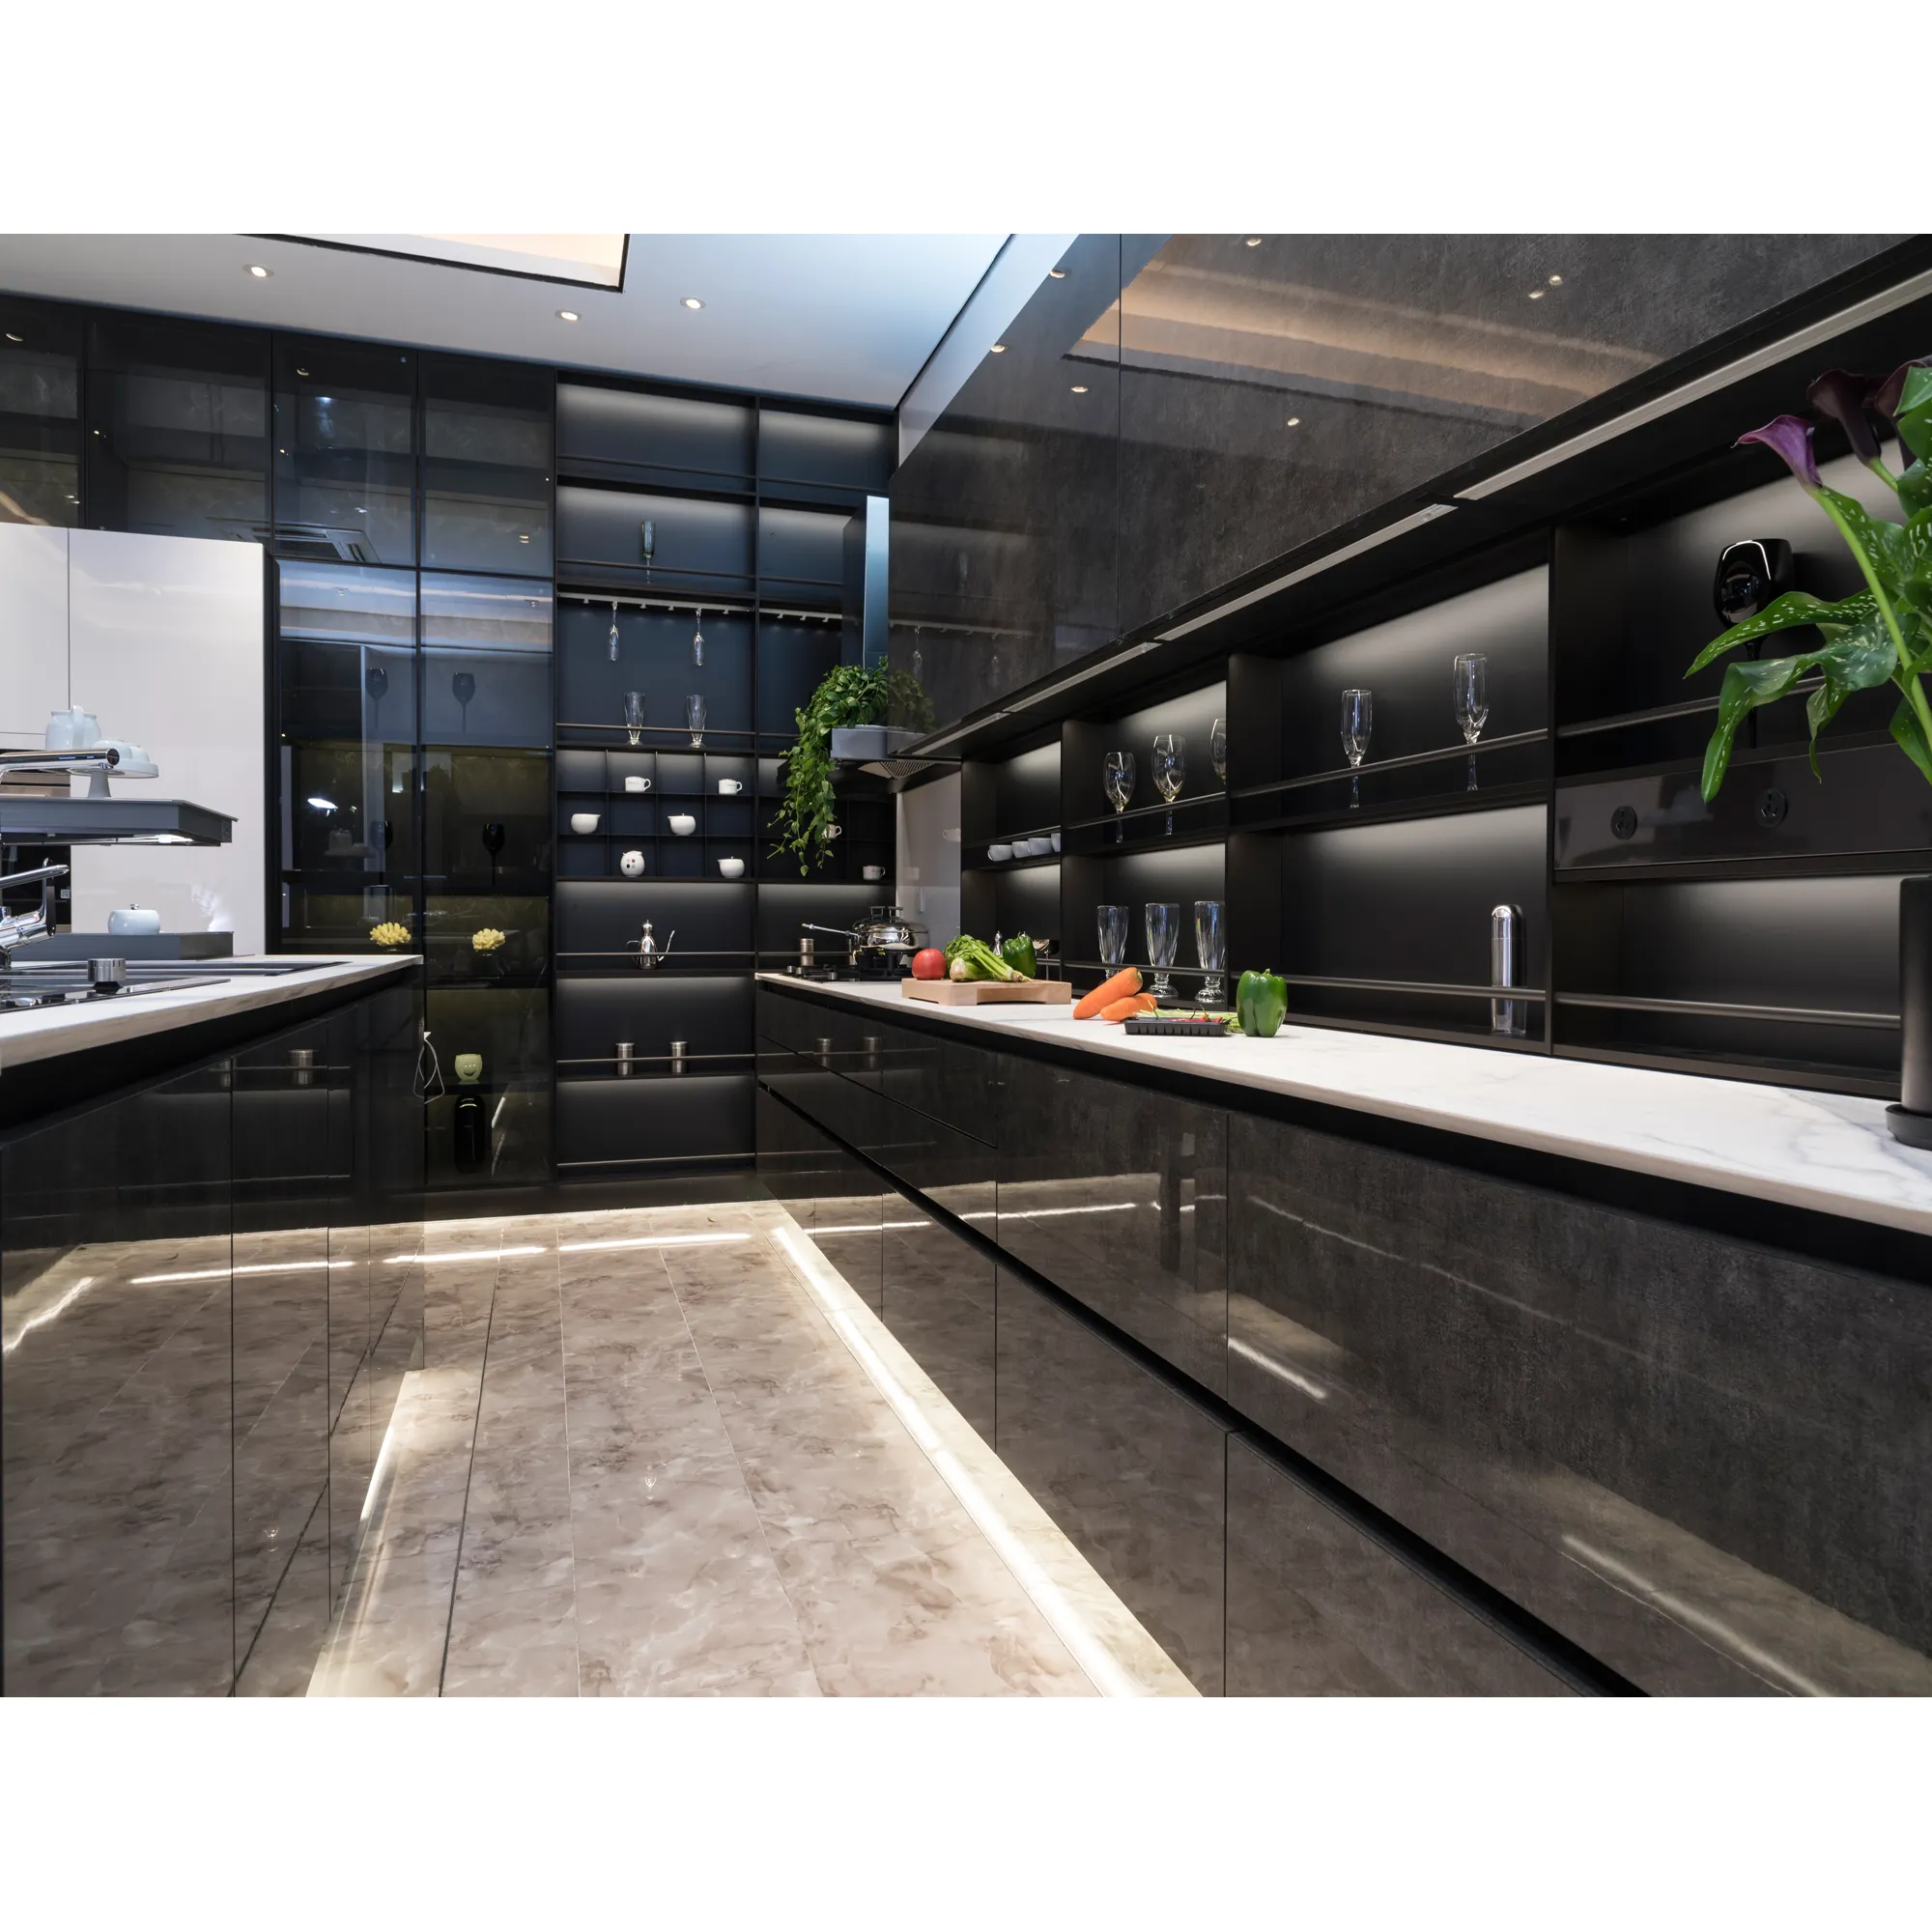 NICOCABINET High Gloss Black Modern New White Designs Kitchen Cabinets Designs Custom Kitchen Supplies